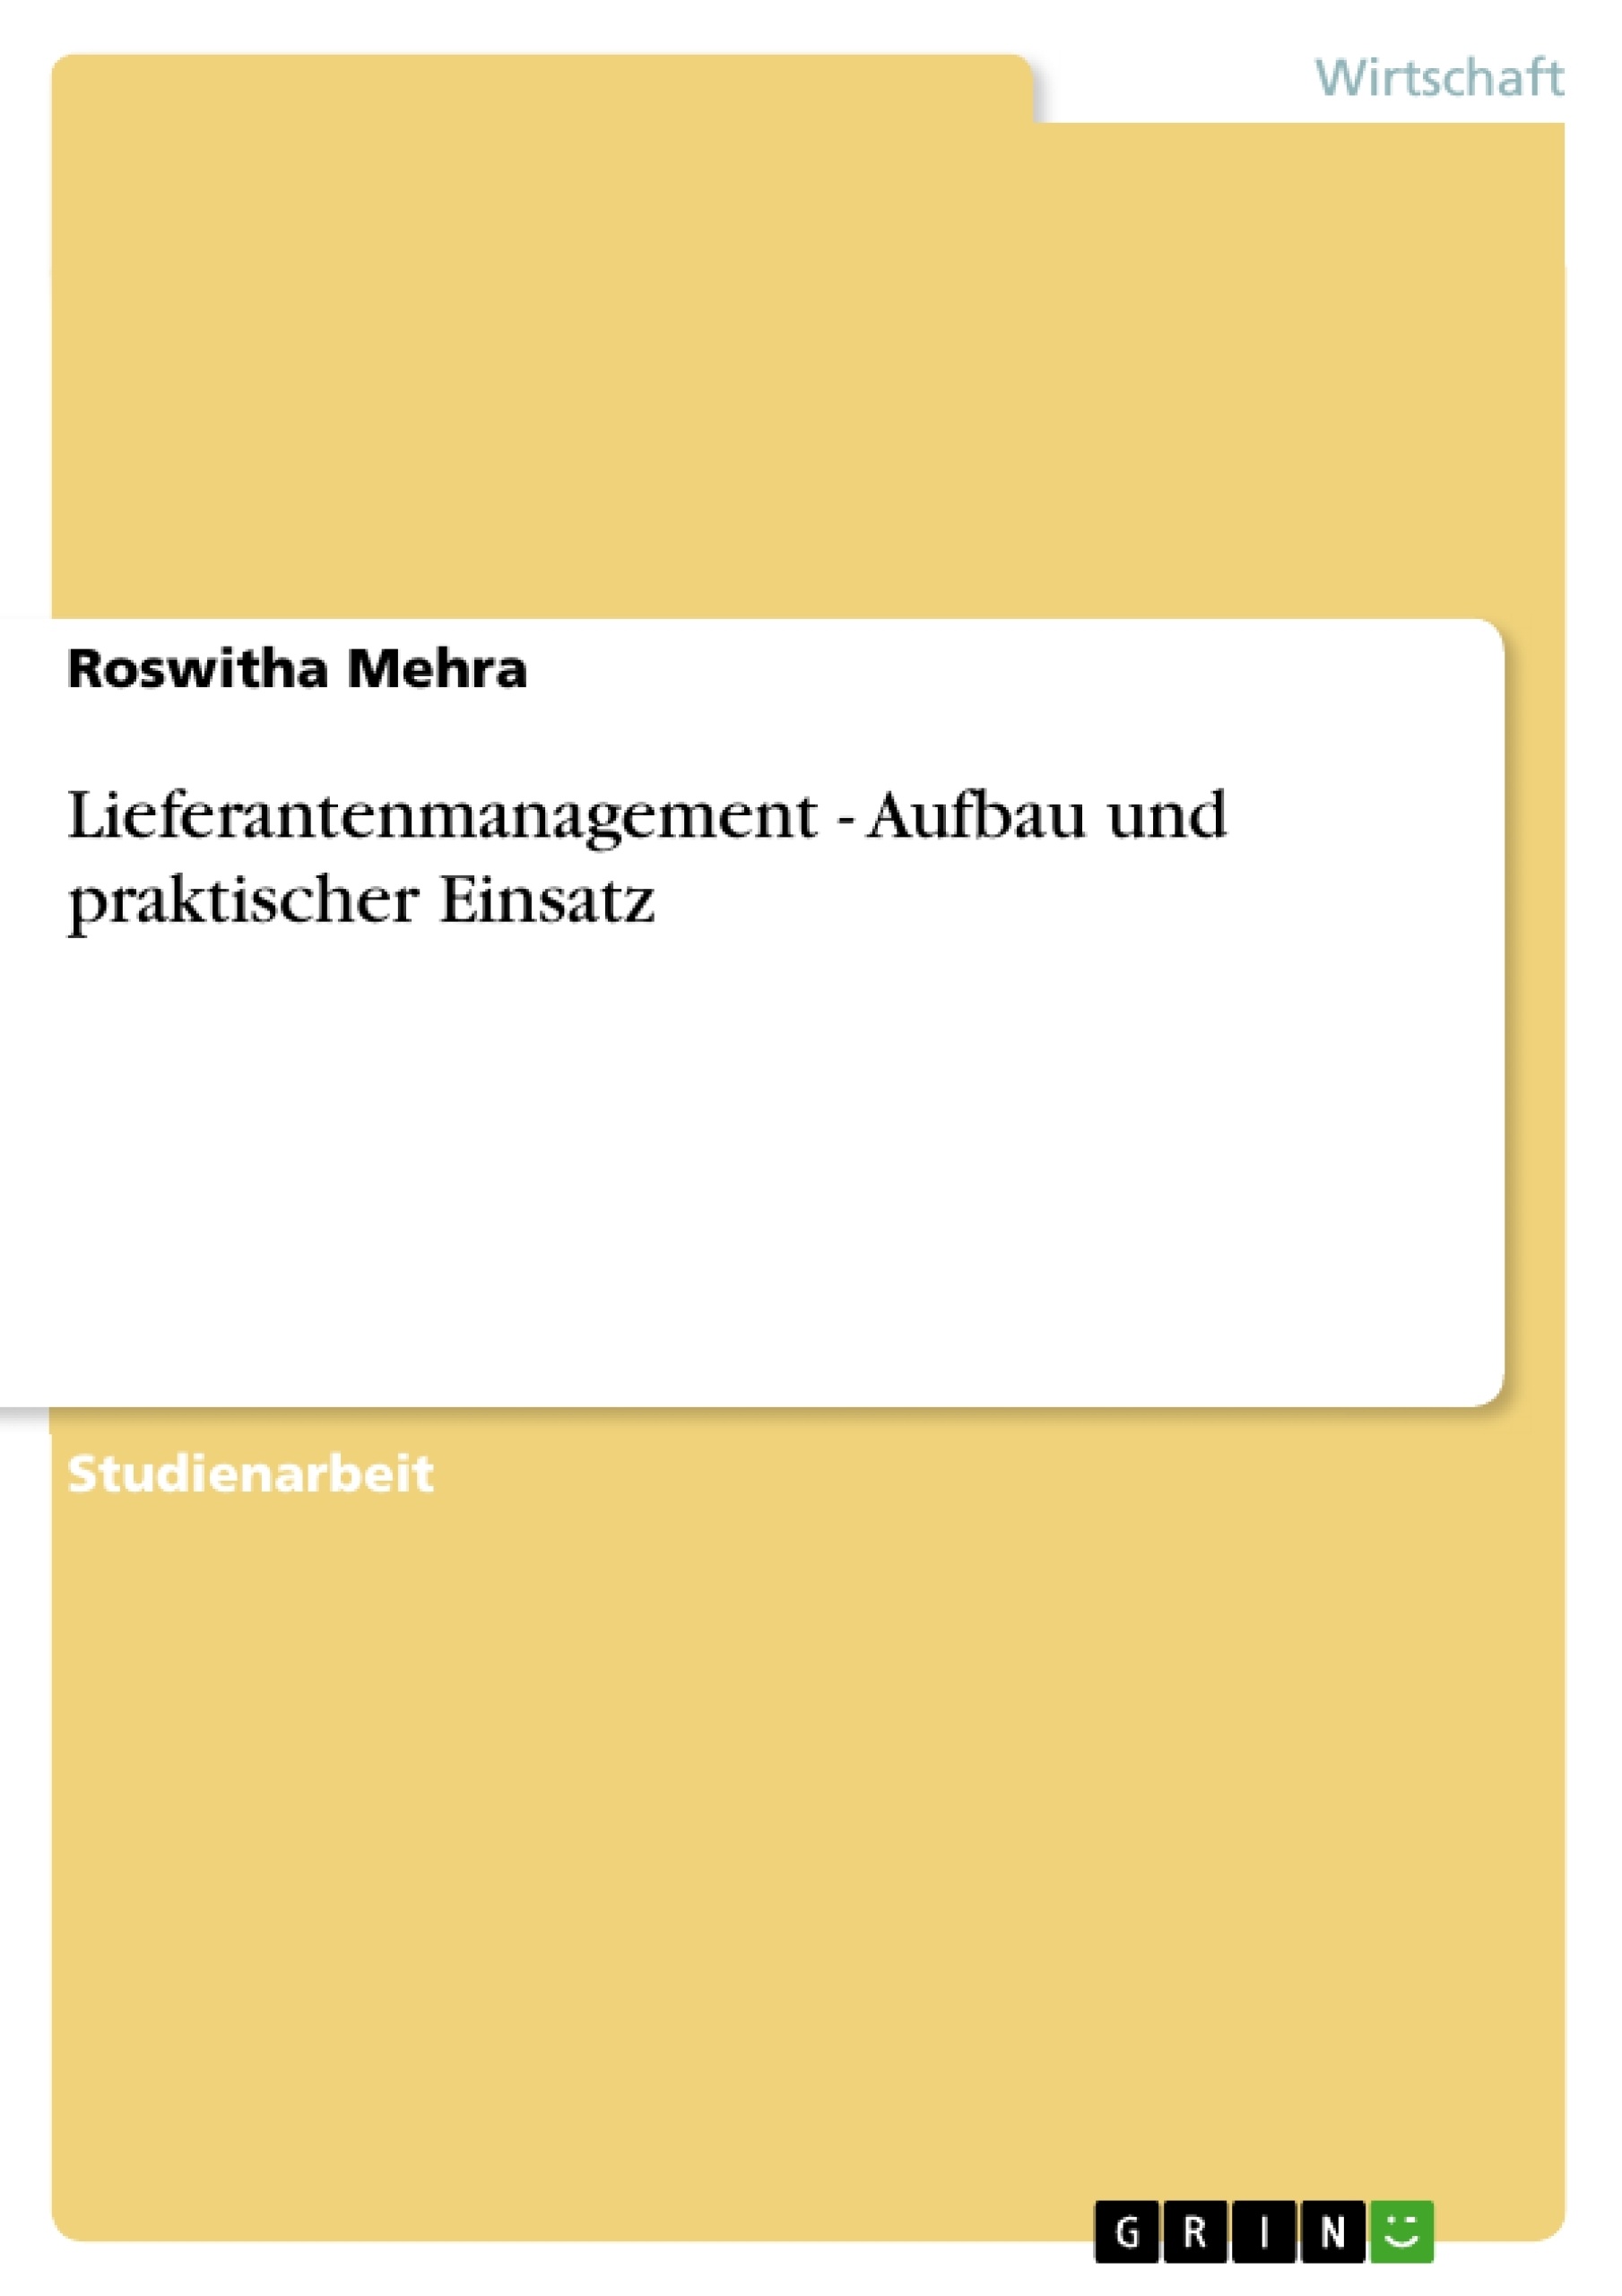 Title: Lieferantenmanagement - Aufbau und praktischer Einsatz